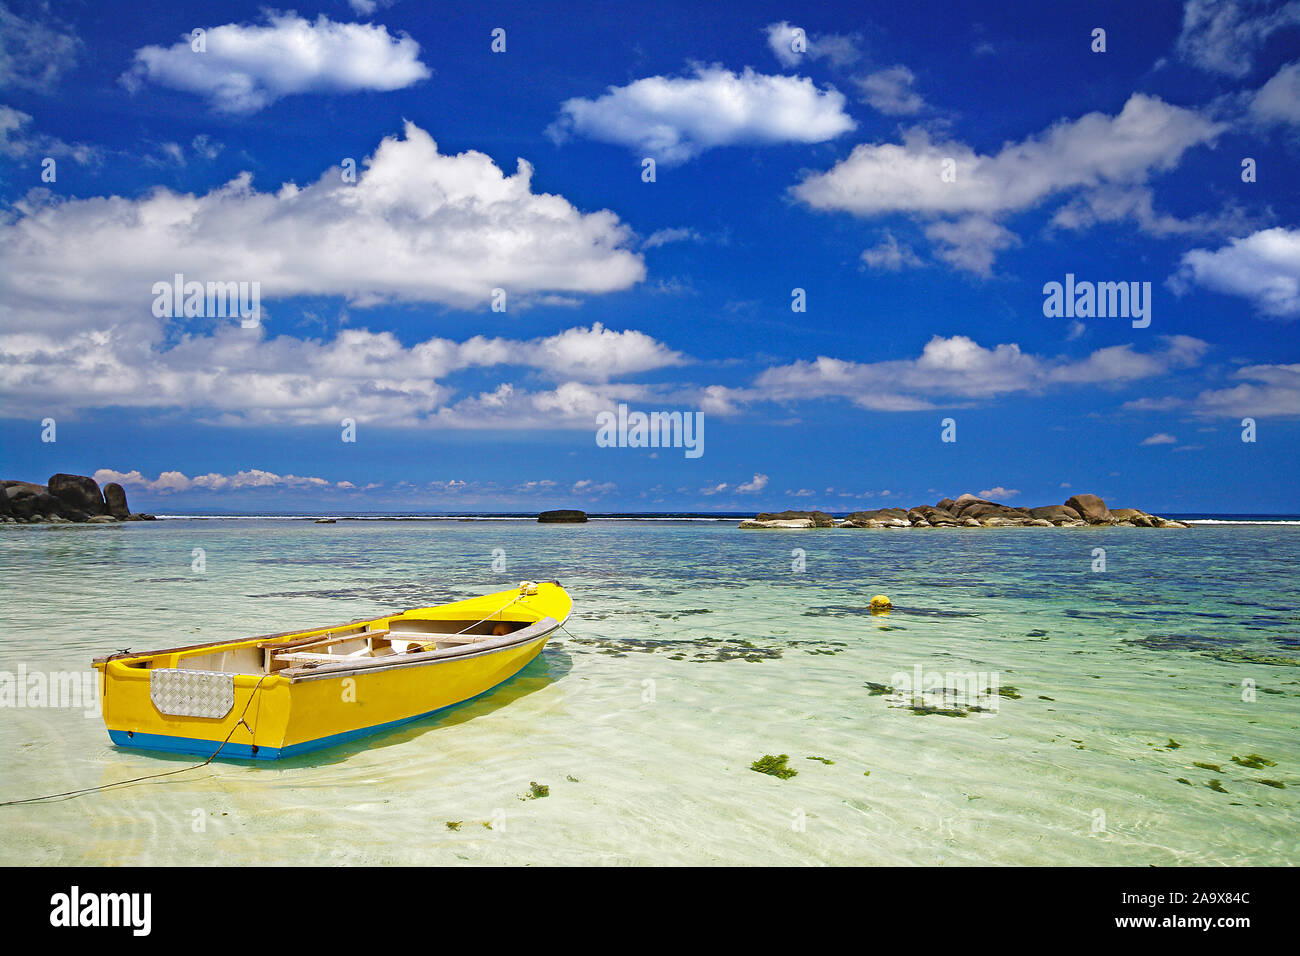 Buntes gelbes traditionelles Fischerboot am Strand der Anse Forbans, tropisches Inselparadies an der Südostküste der Hauptinsel Mahe, indischer Ozean, Foto Stock